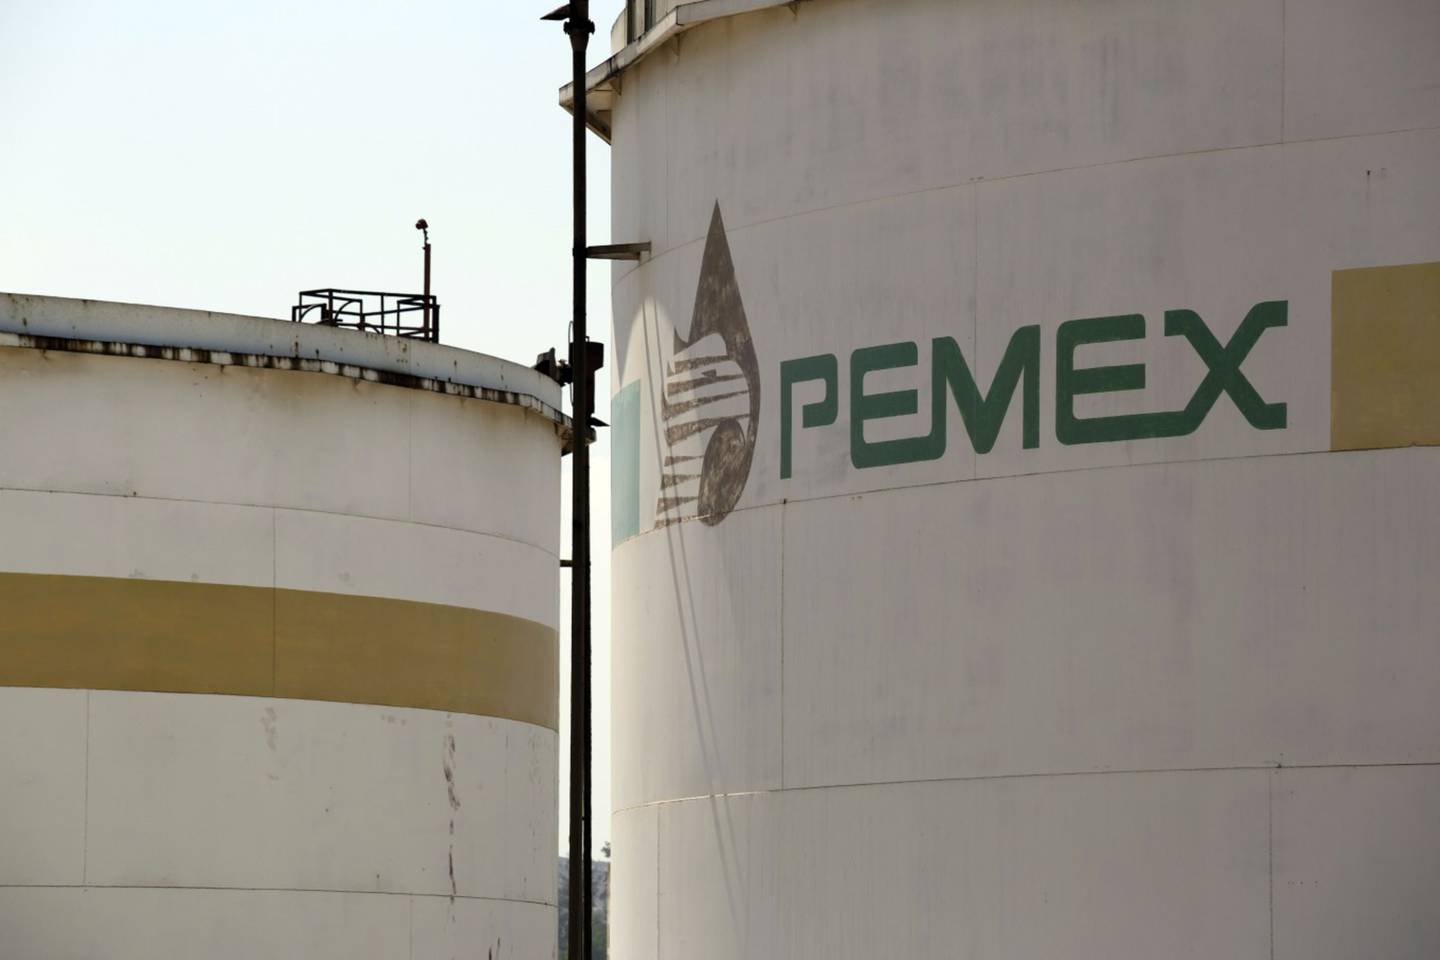 El logo de Petróleos Mexicanos (Pemex) sobre un tanque de almacenamiento de combustible en la refinería Miguel Hidalgo, ubicada en Tula, Hidalgo.